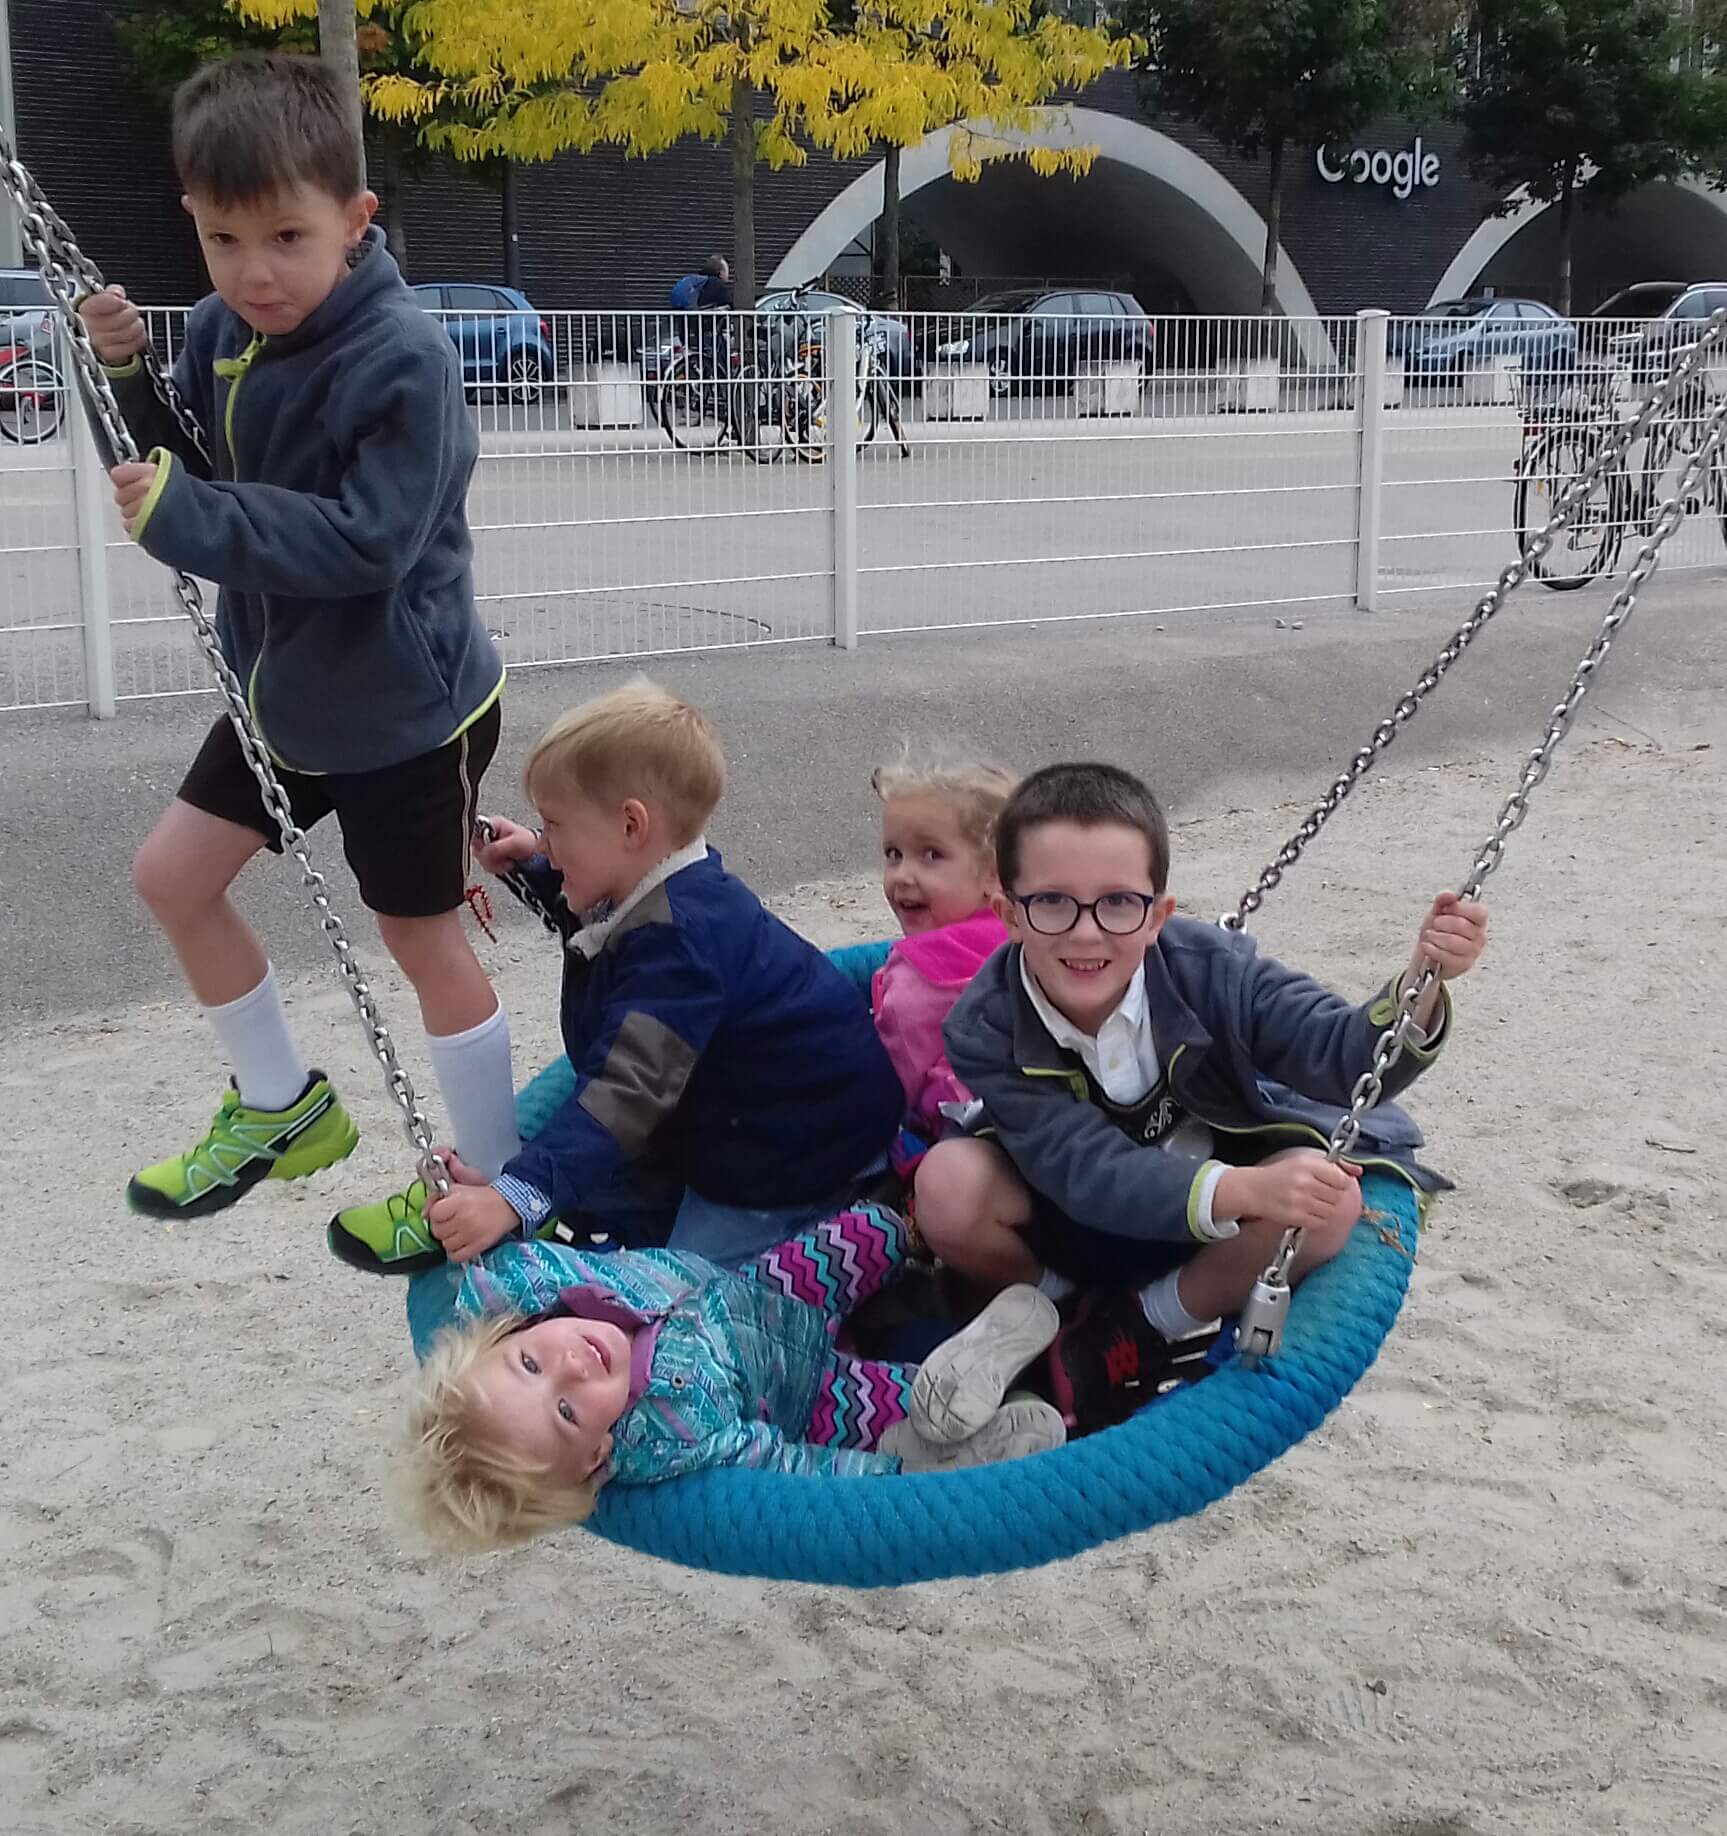 Munich babysitting agency babysitter took kids the park 